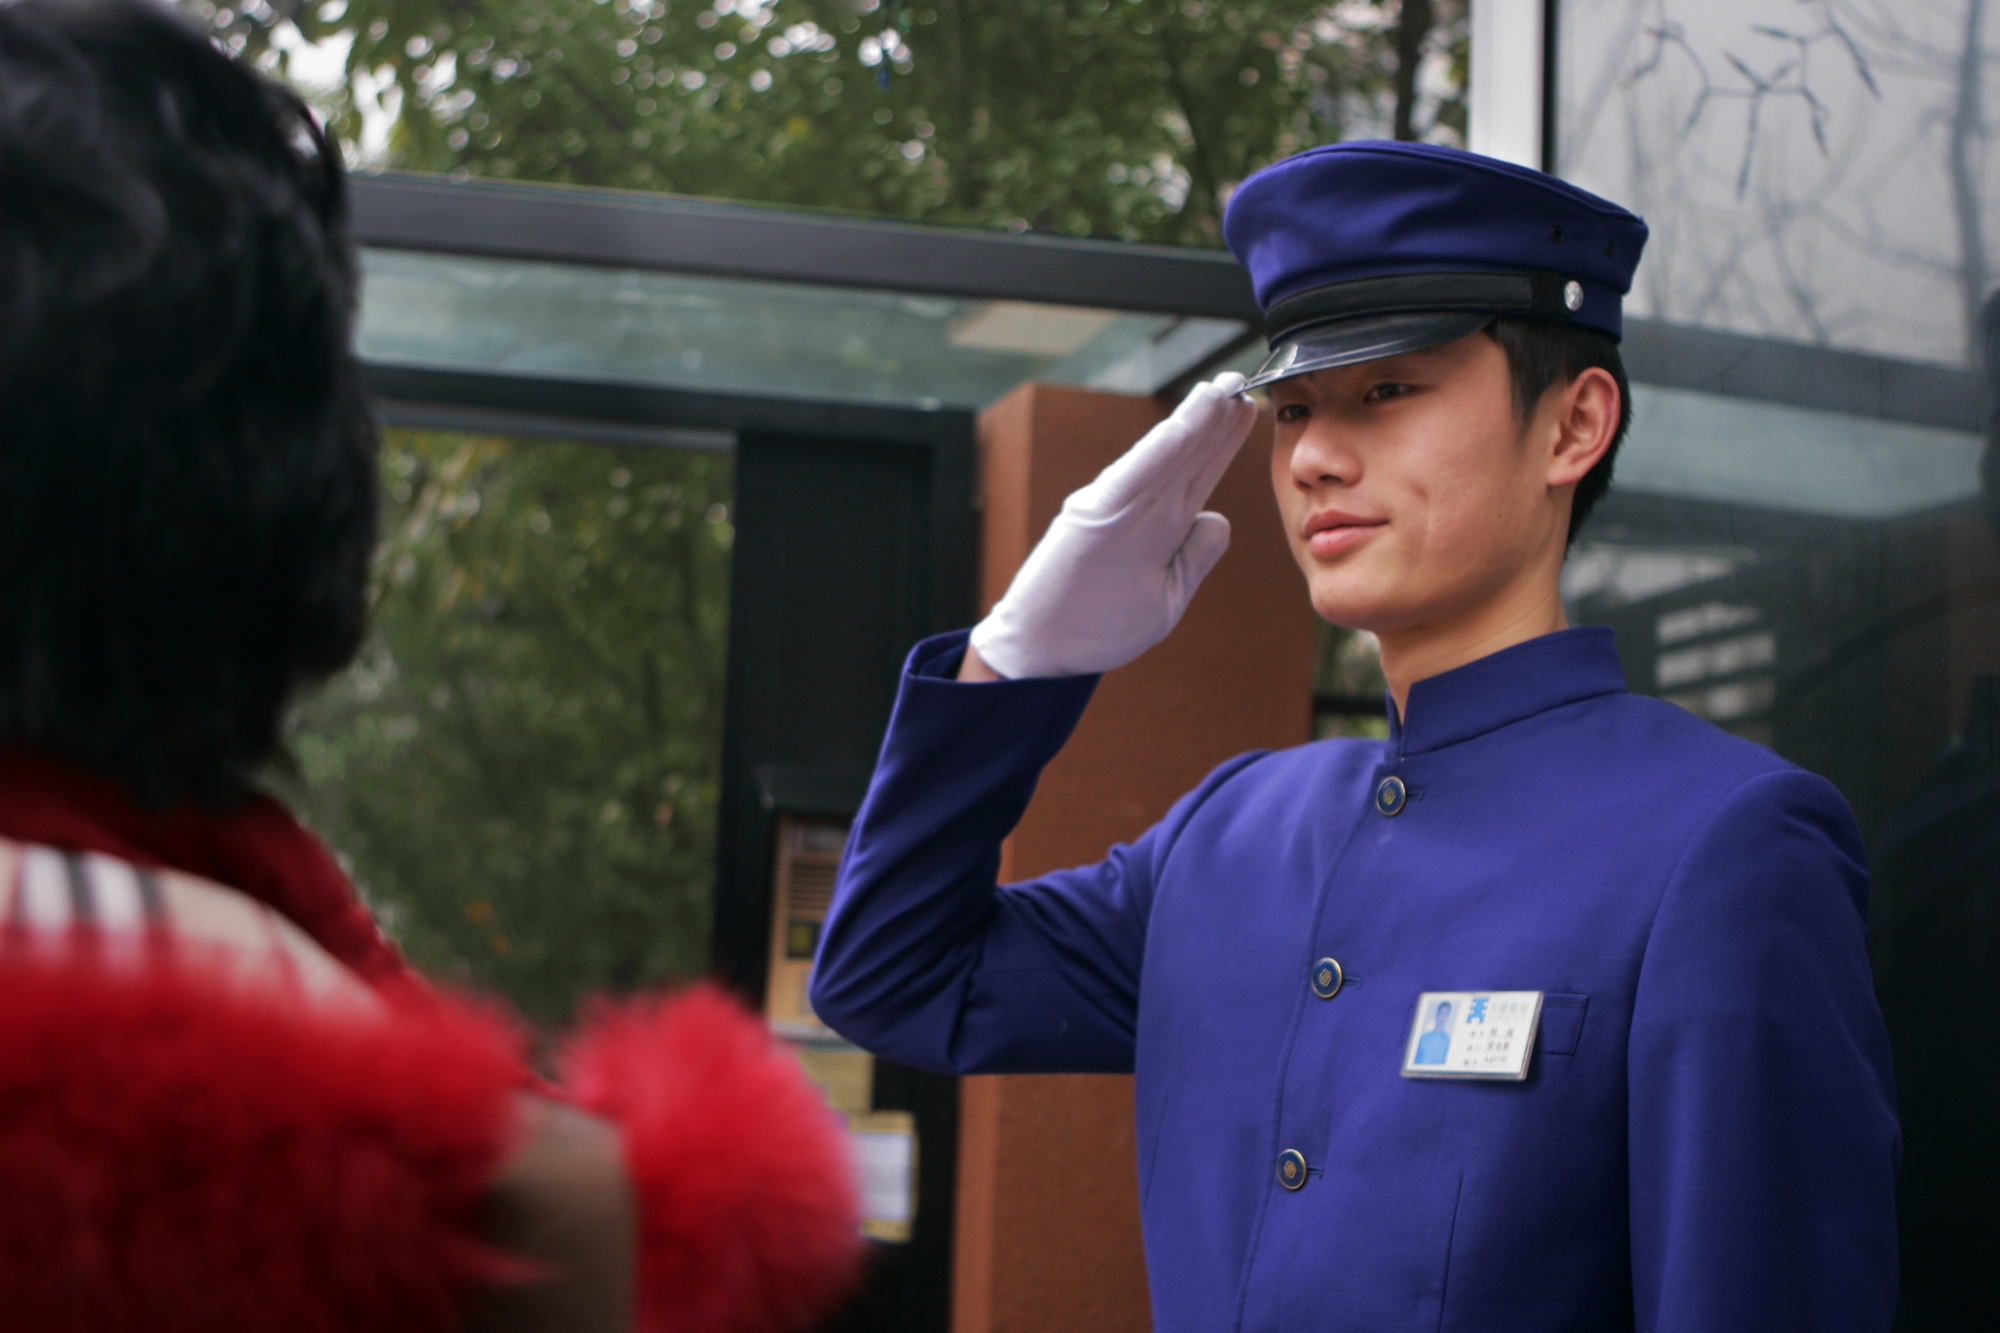 重庆天景物业服务有限公司 环境照片活动图片